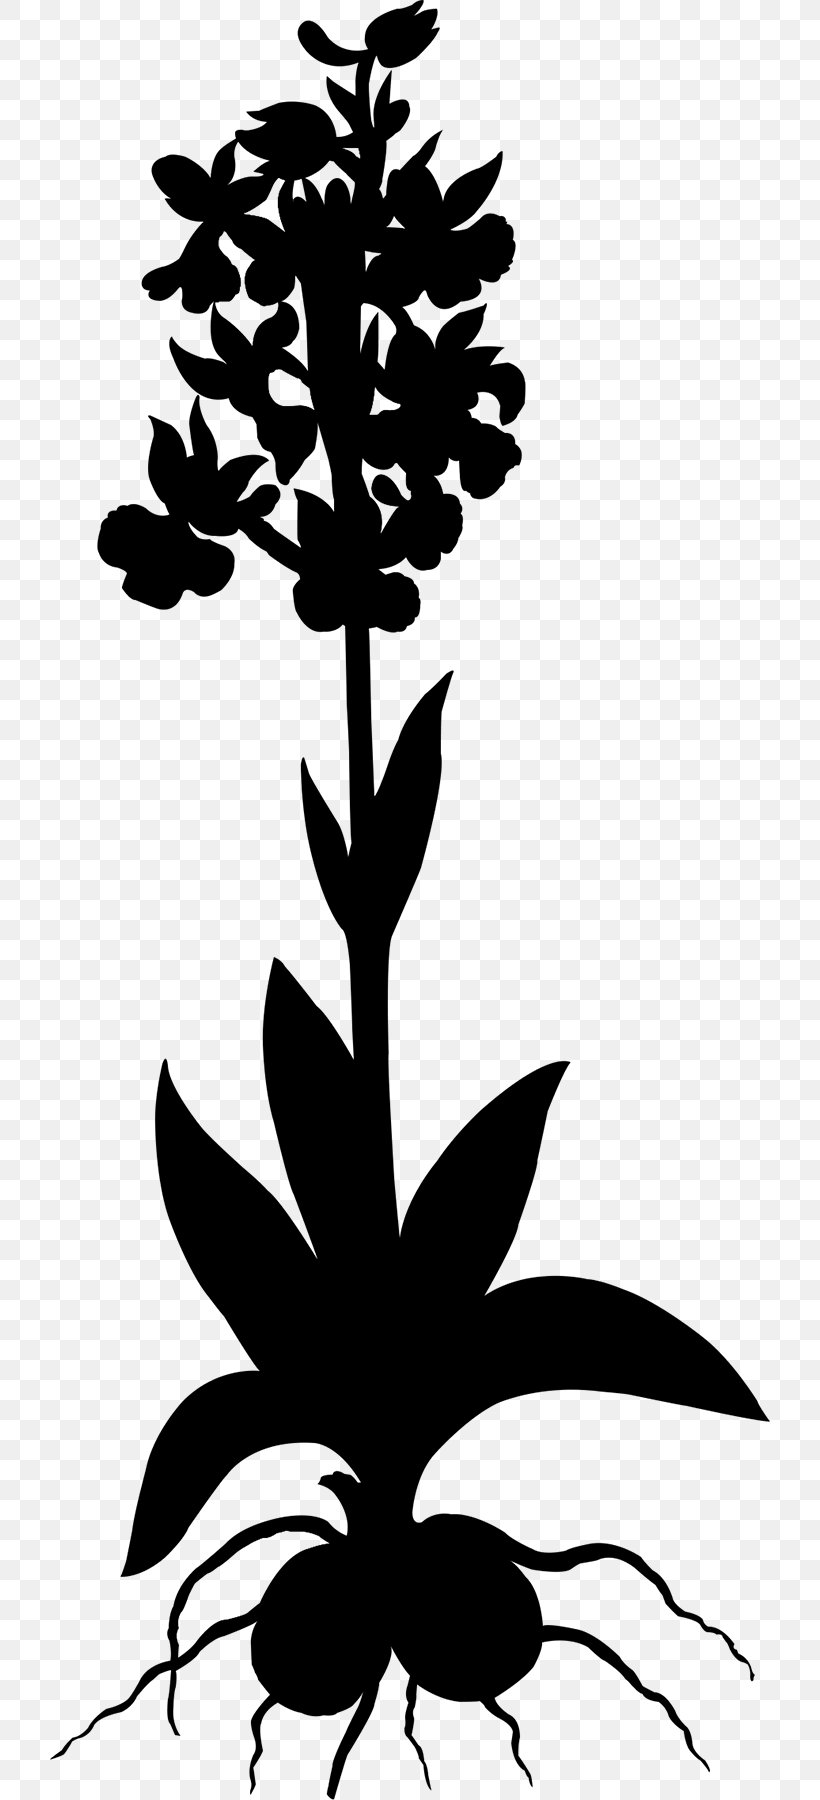 Leaf Floral Design Clip Art Plant Stem, PNG, 720x1800px, Leaf, Blackandwhite, Botany, Floral Design, Flower Download Free